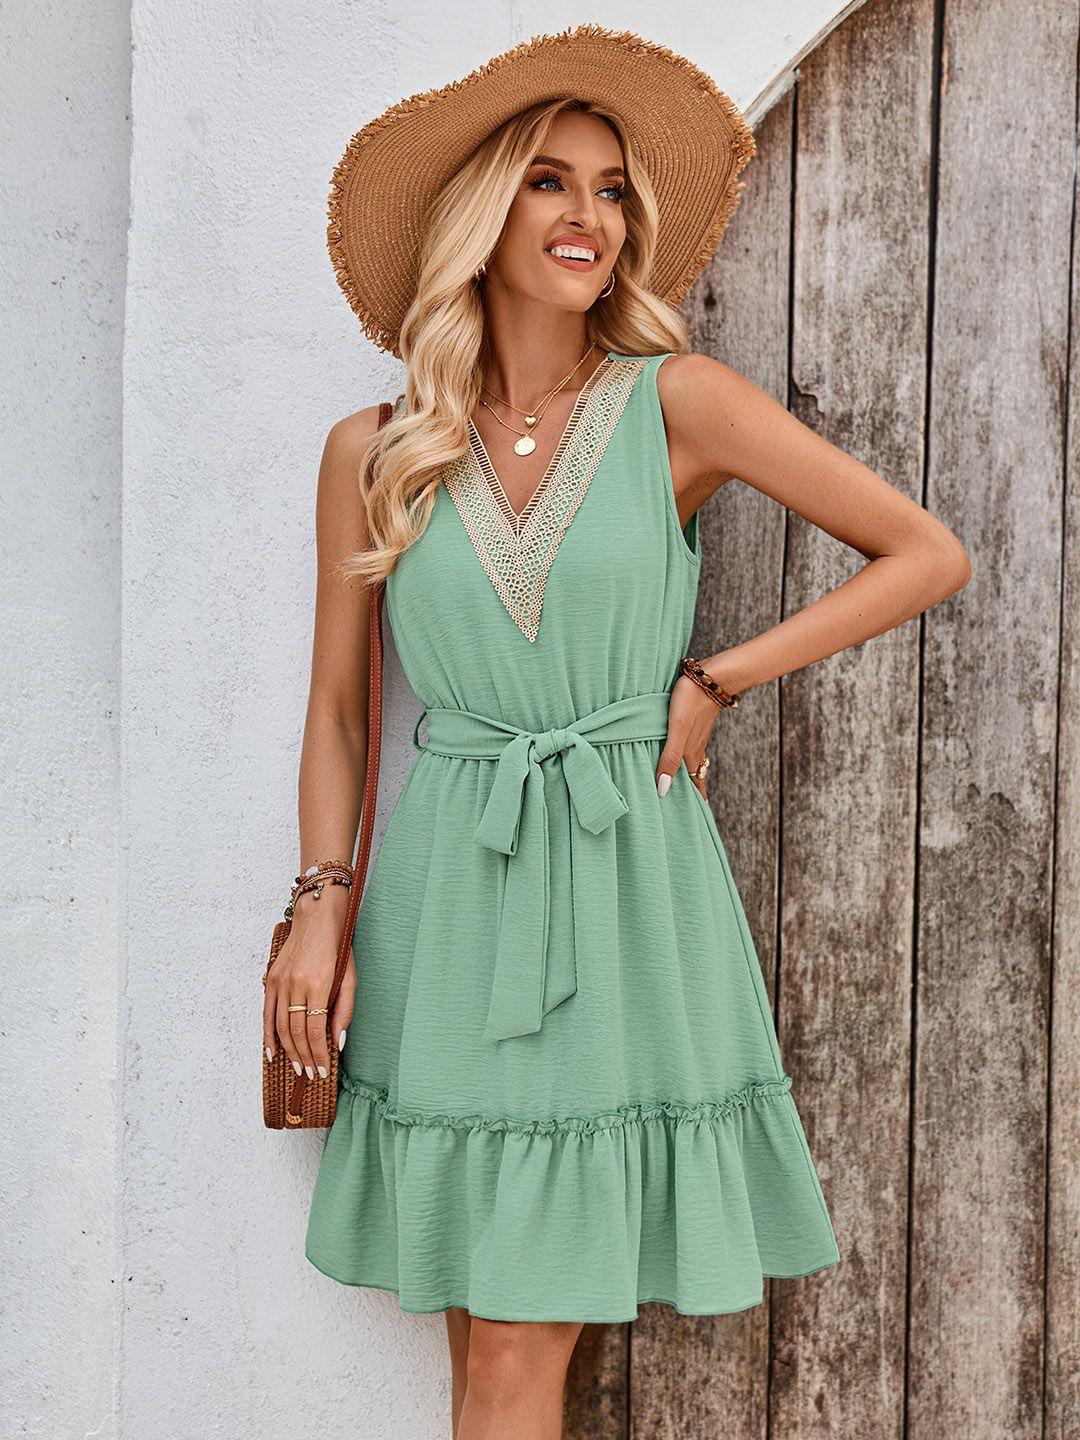 stylecast green v-neck fit & flare dress